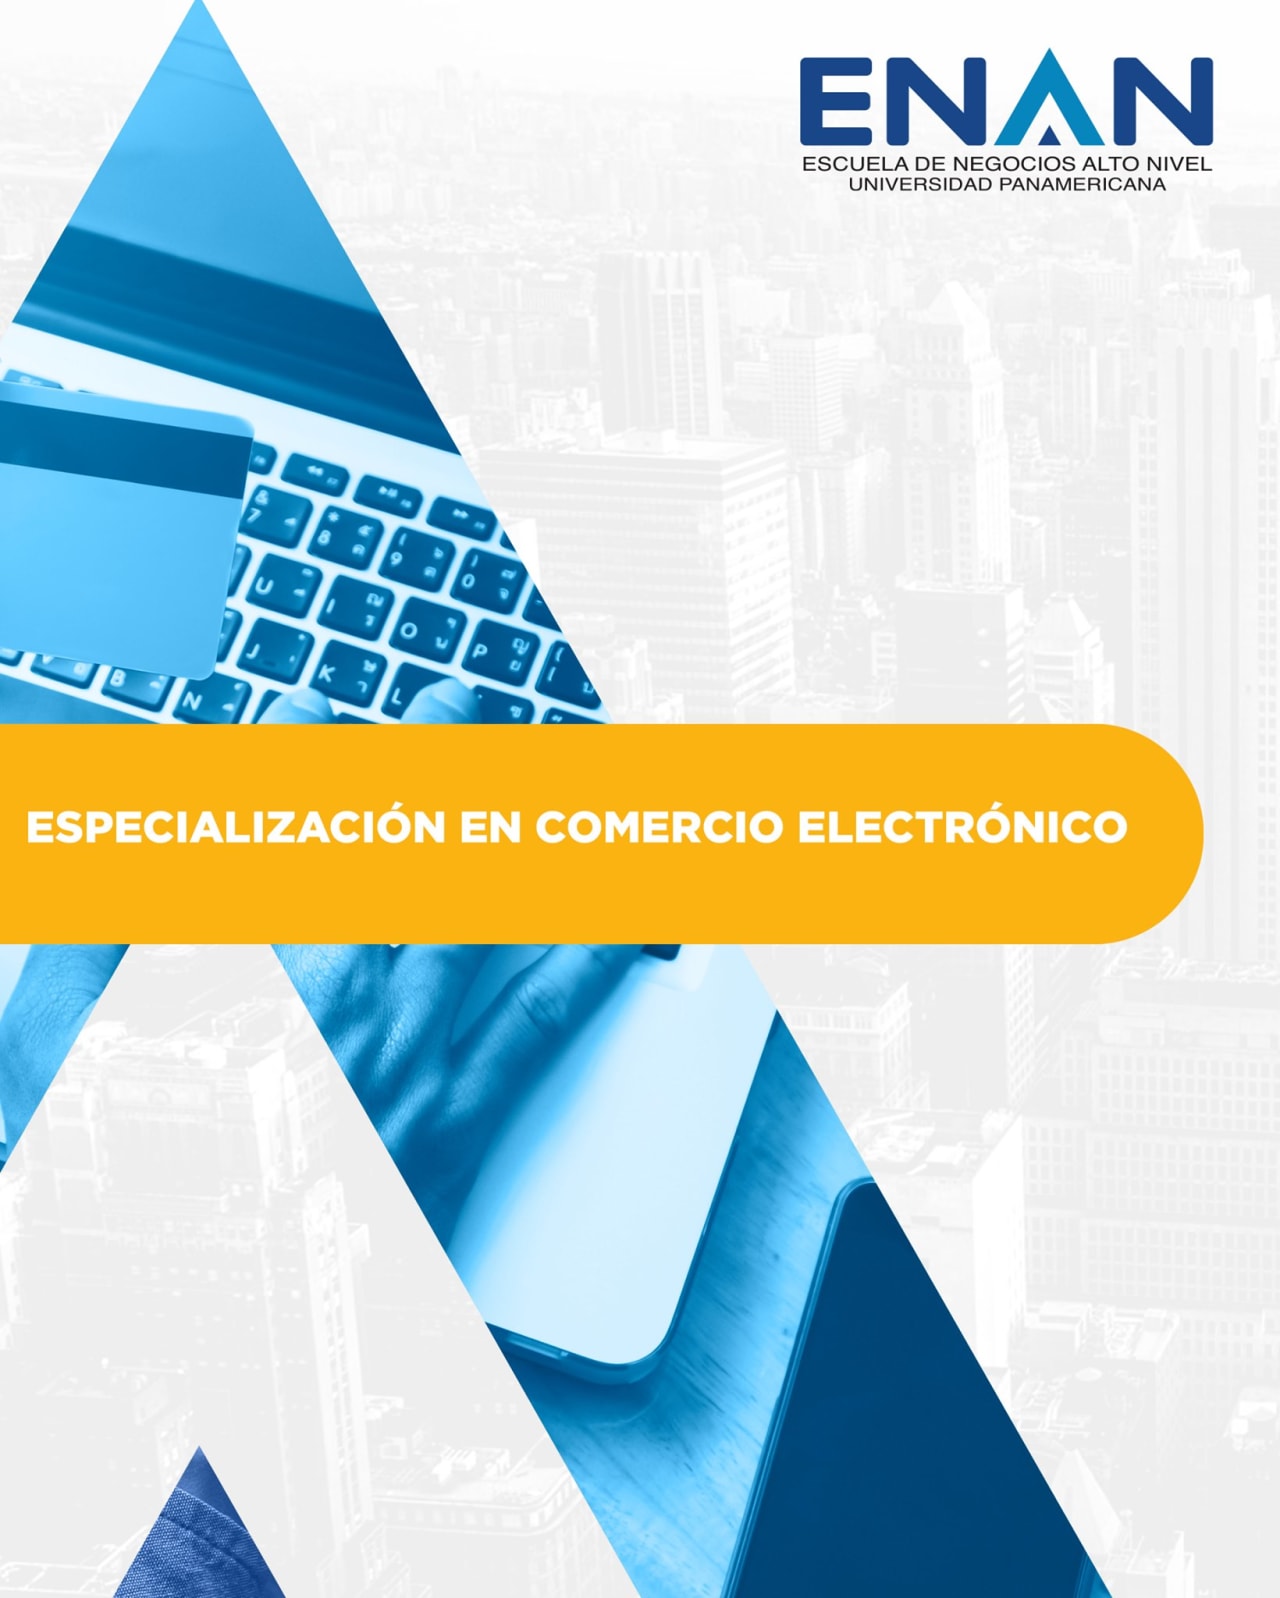 Escuela de Negocios Alto Nivel - Universidad Panamericana de Guatemala Elektroninės komercijos specializacija